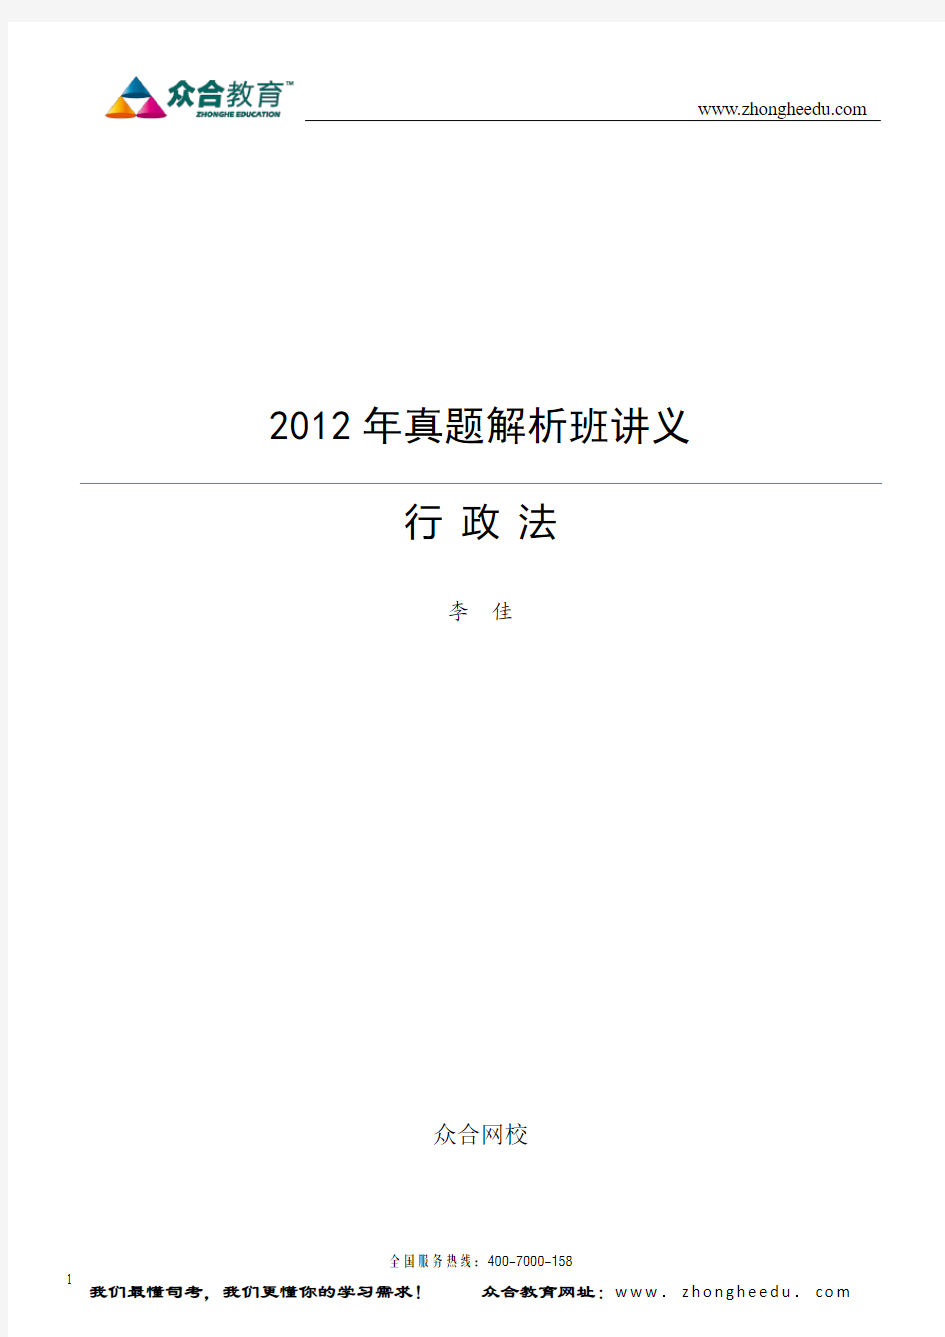 众合教育2012年真题解析班行政法讲义(李佳)